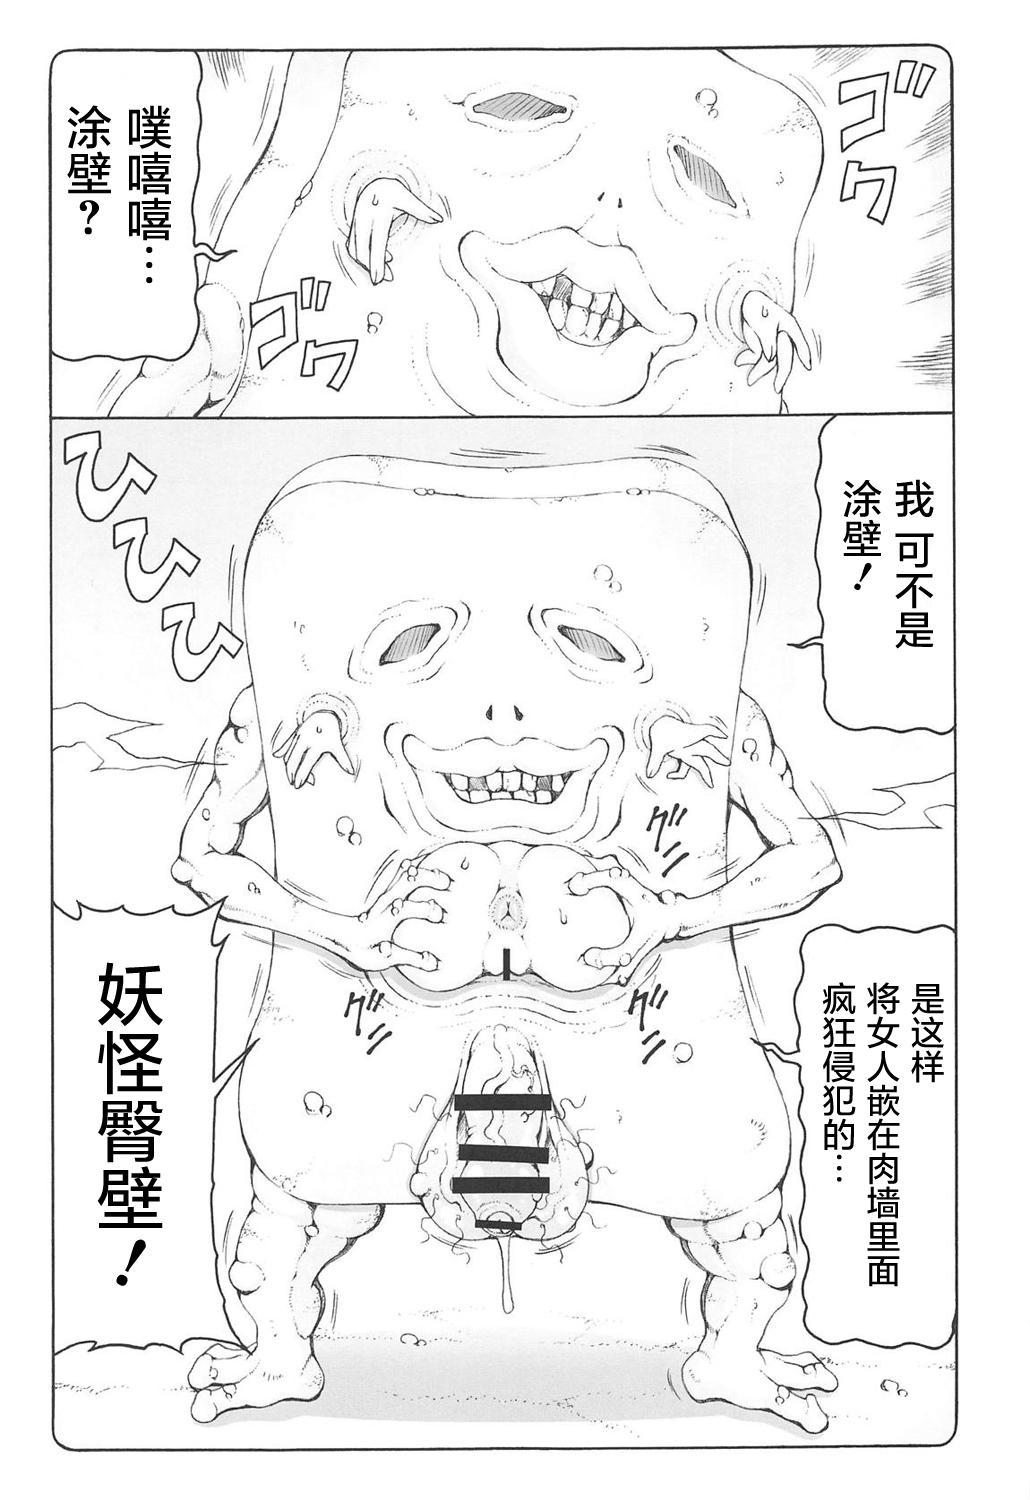 Off Nuko Musume vs Youkai Shirikabe - Gegege no kitarou Com - Page 9